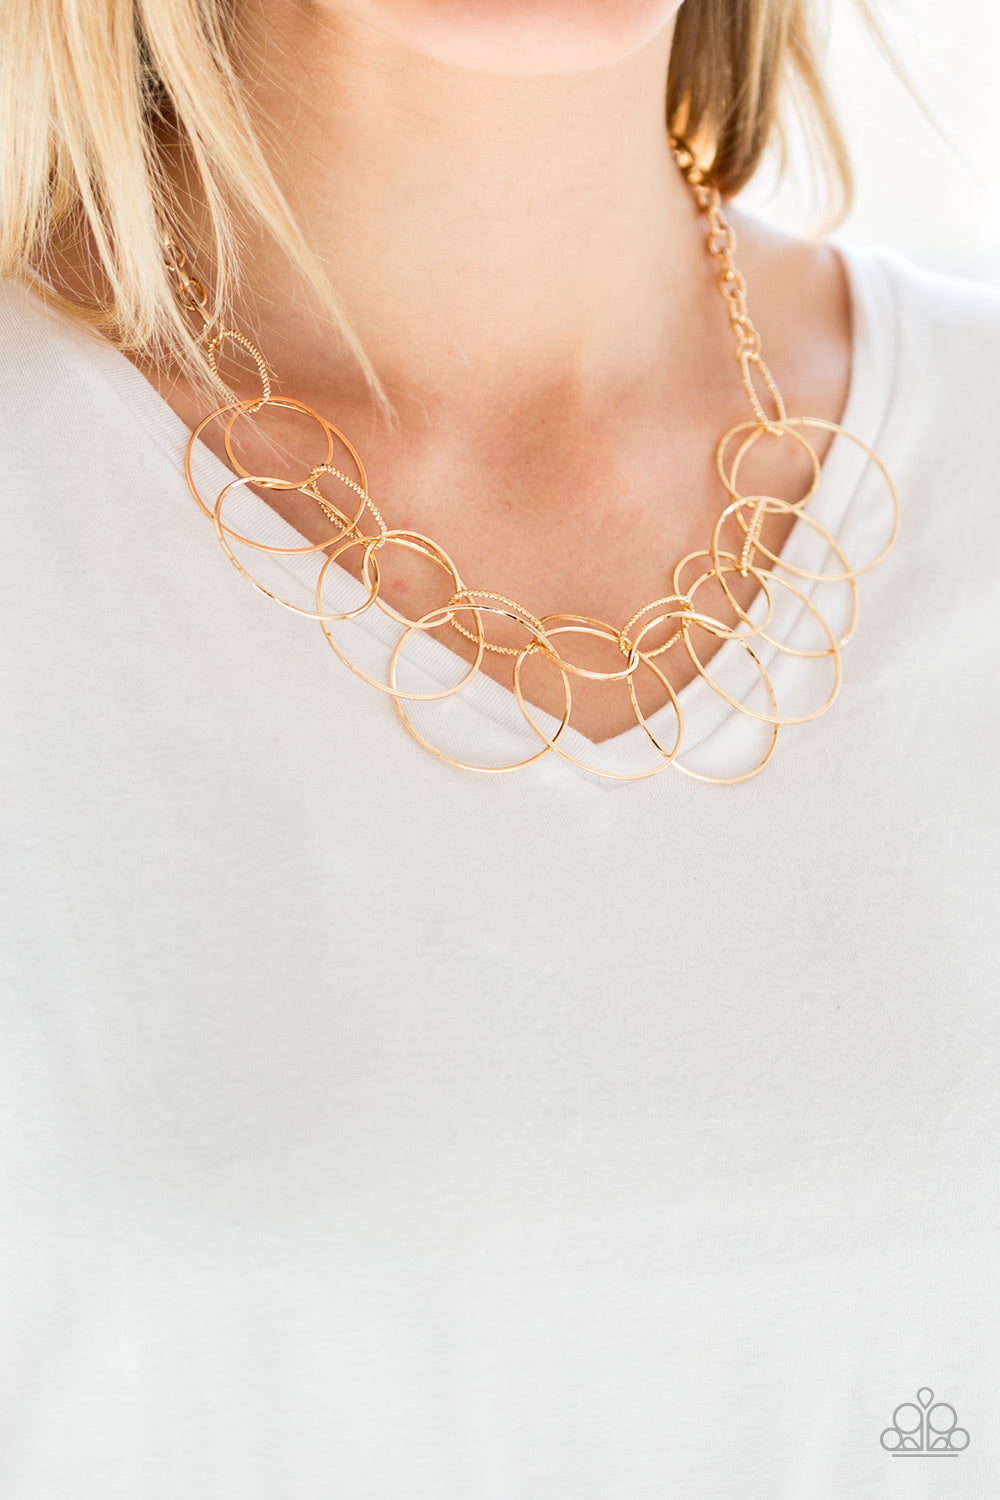 Paparazzi - Circa de Couture - Gold Necklace